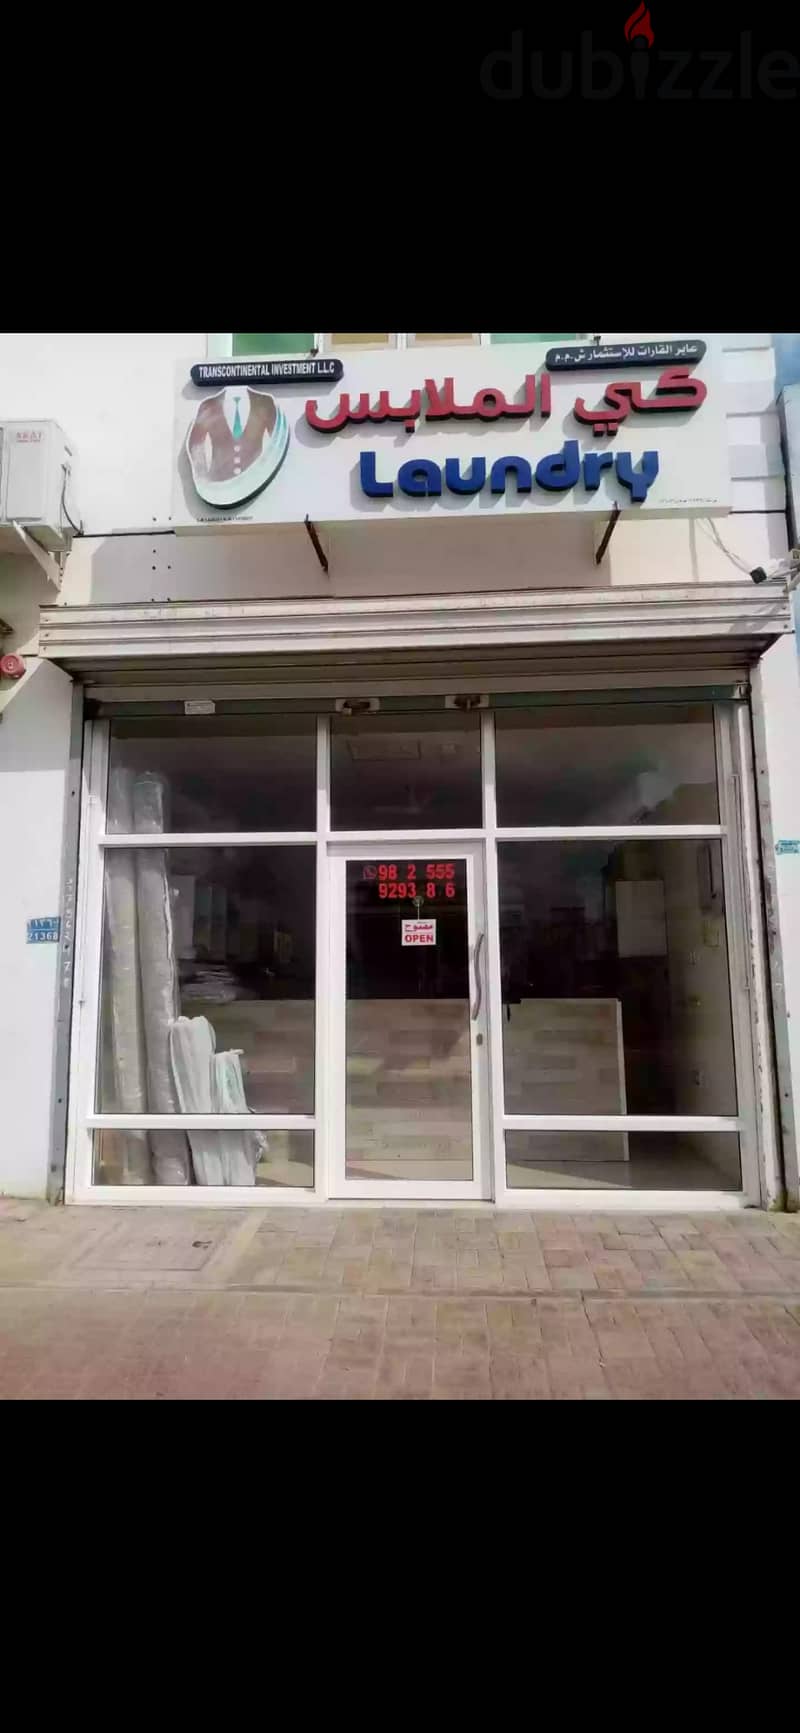 محل كي الملابس للبيع laundry for sale 0